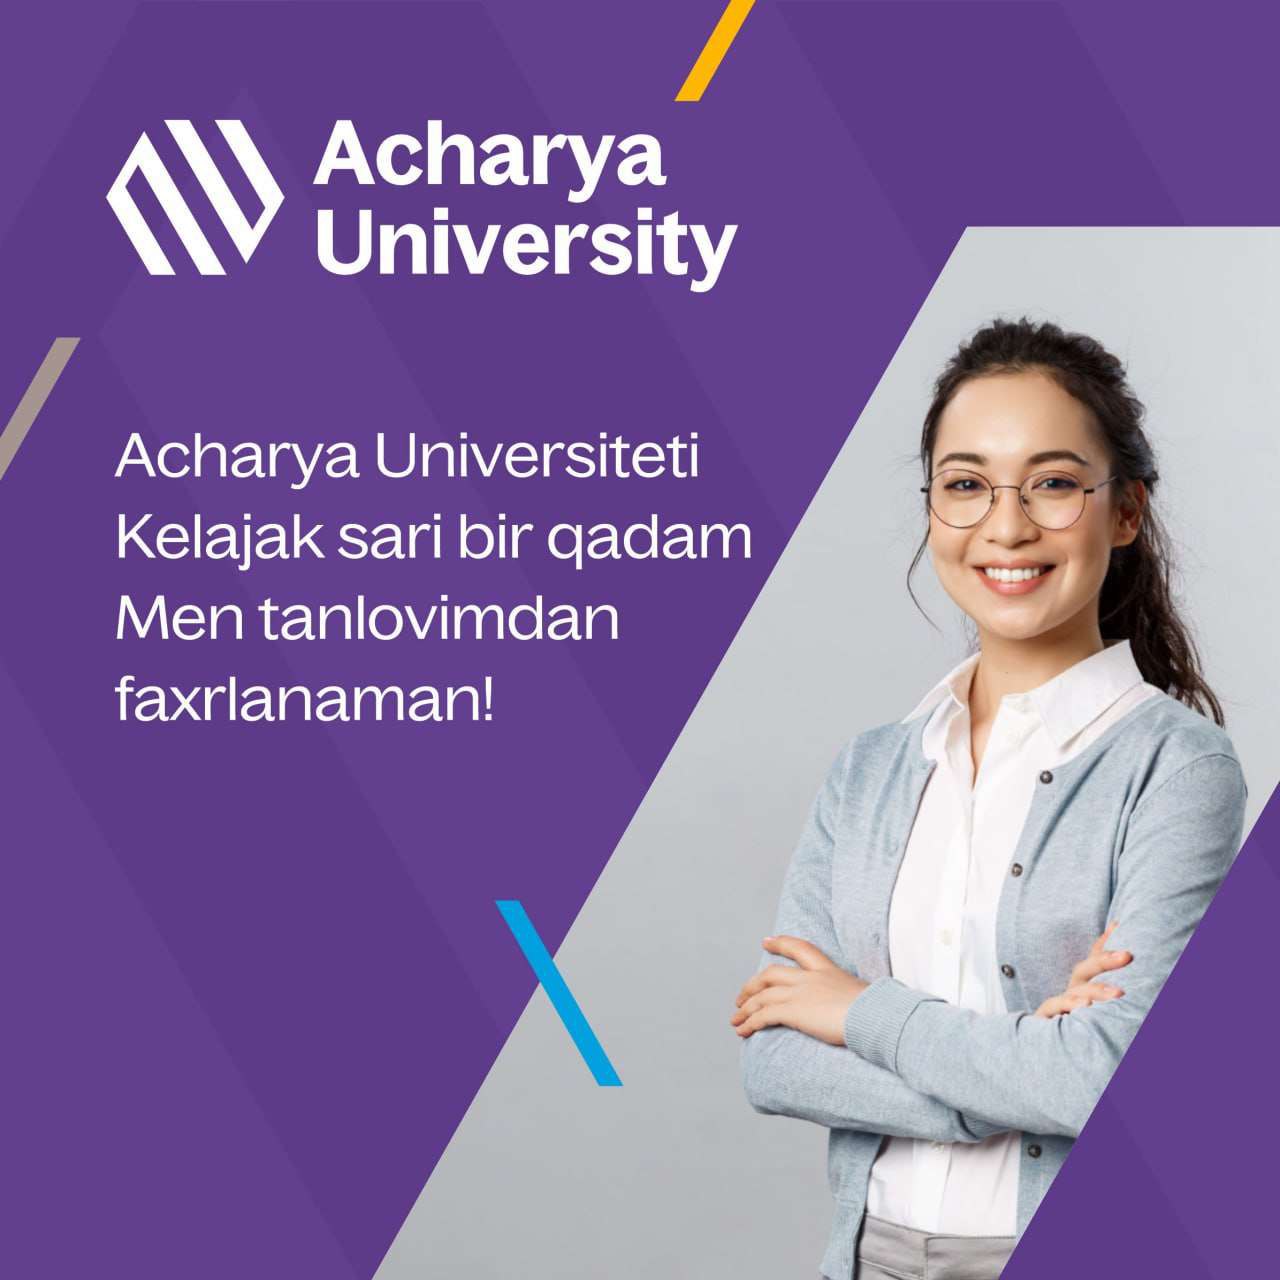 Acharya University